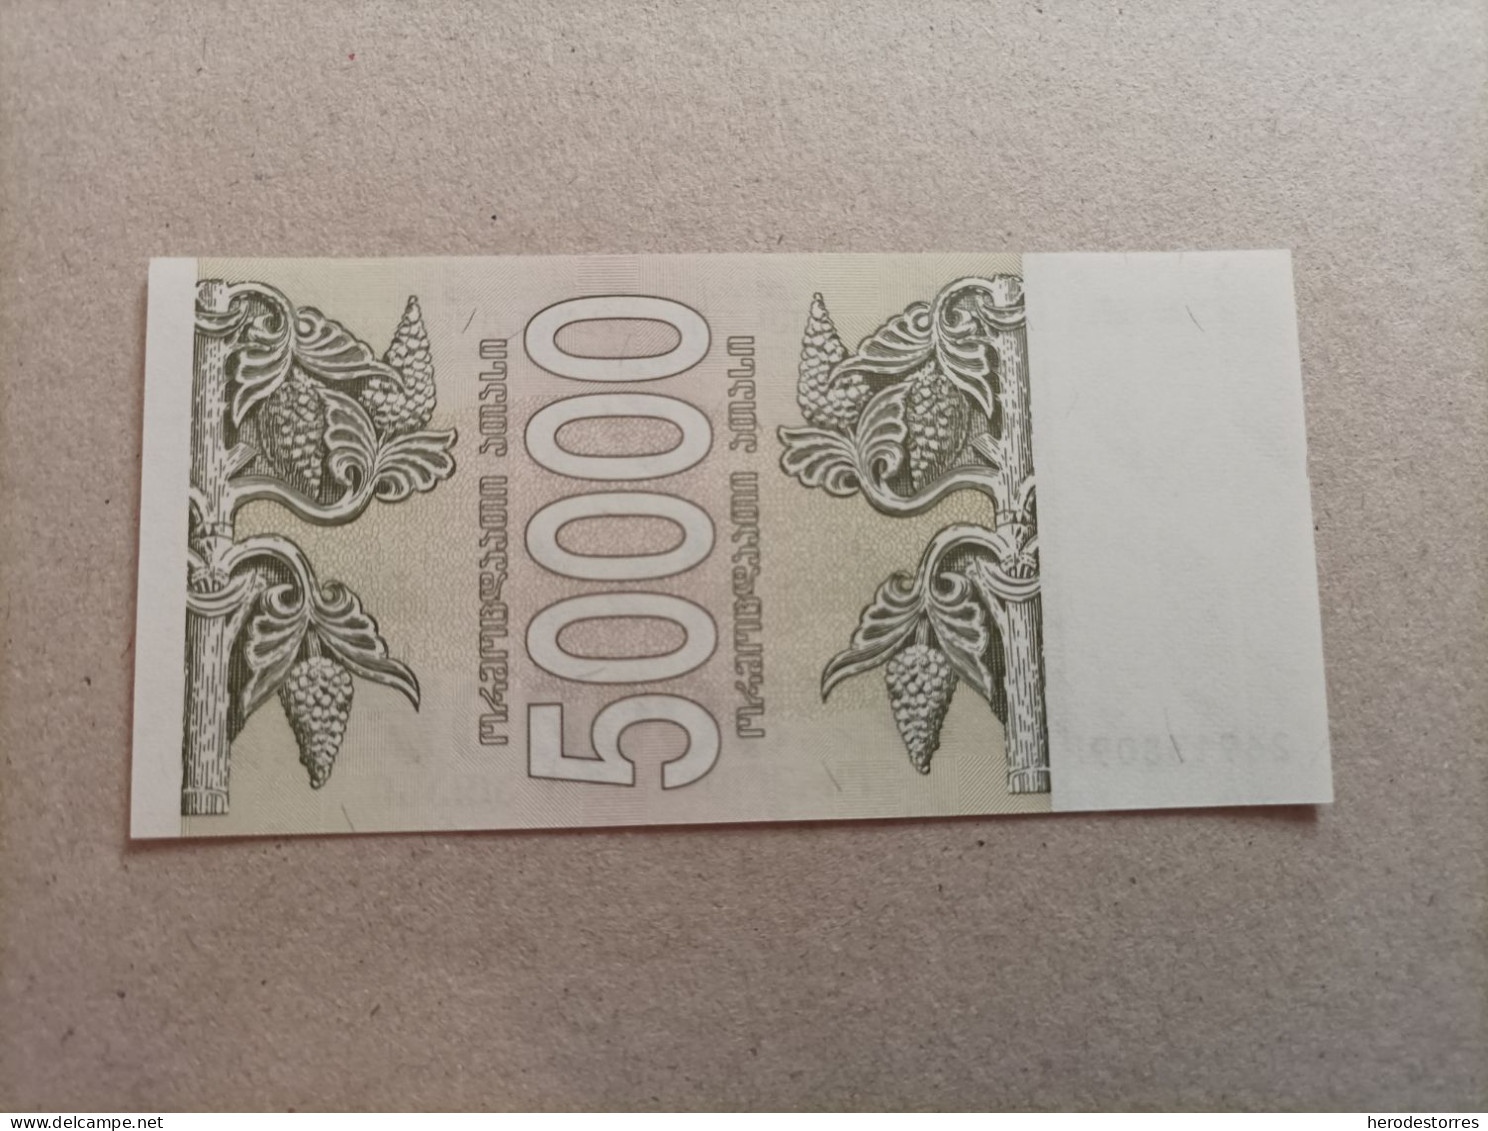 Billete De Georgia De 50000 Laris, Año 1994, UNC - Géorgie